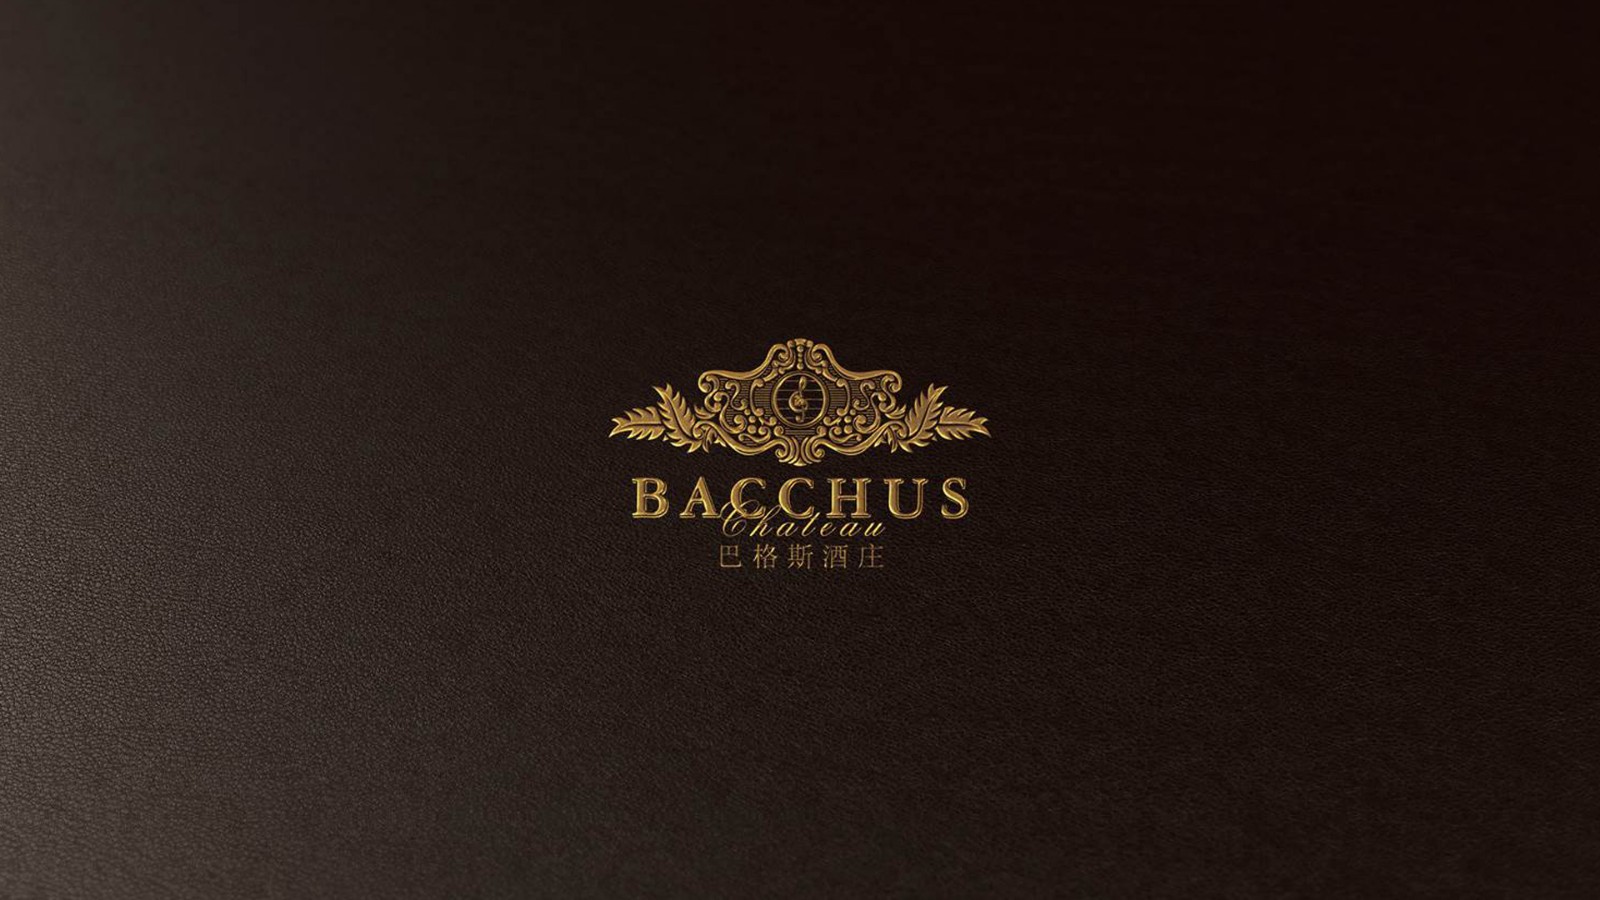 古一设计,巴格斯酒庄,红酒标志设计,logo设计